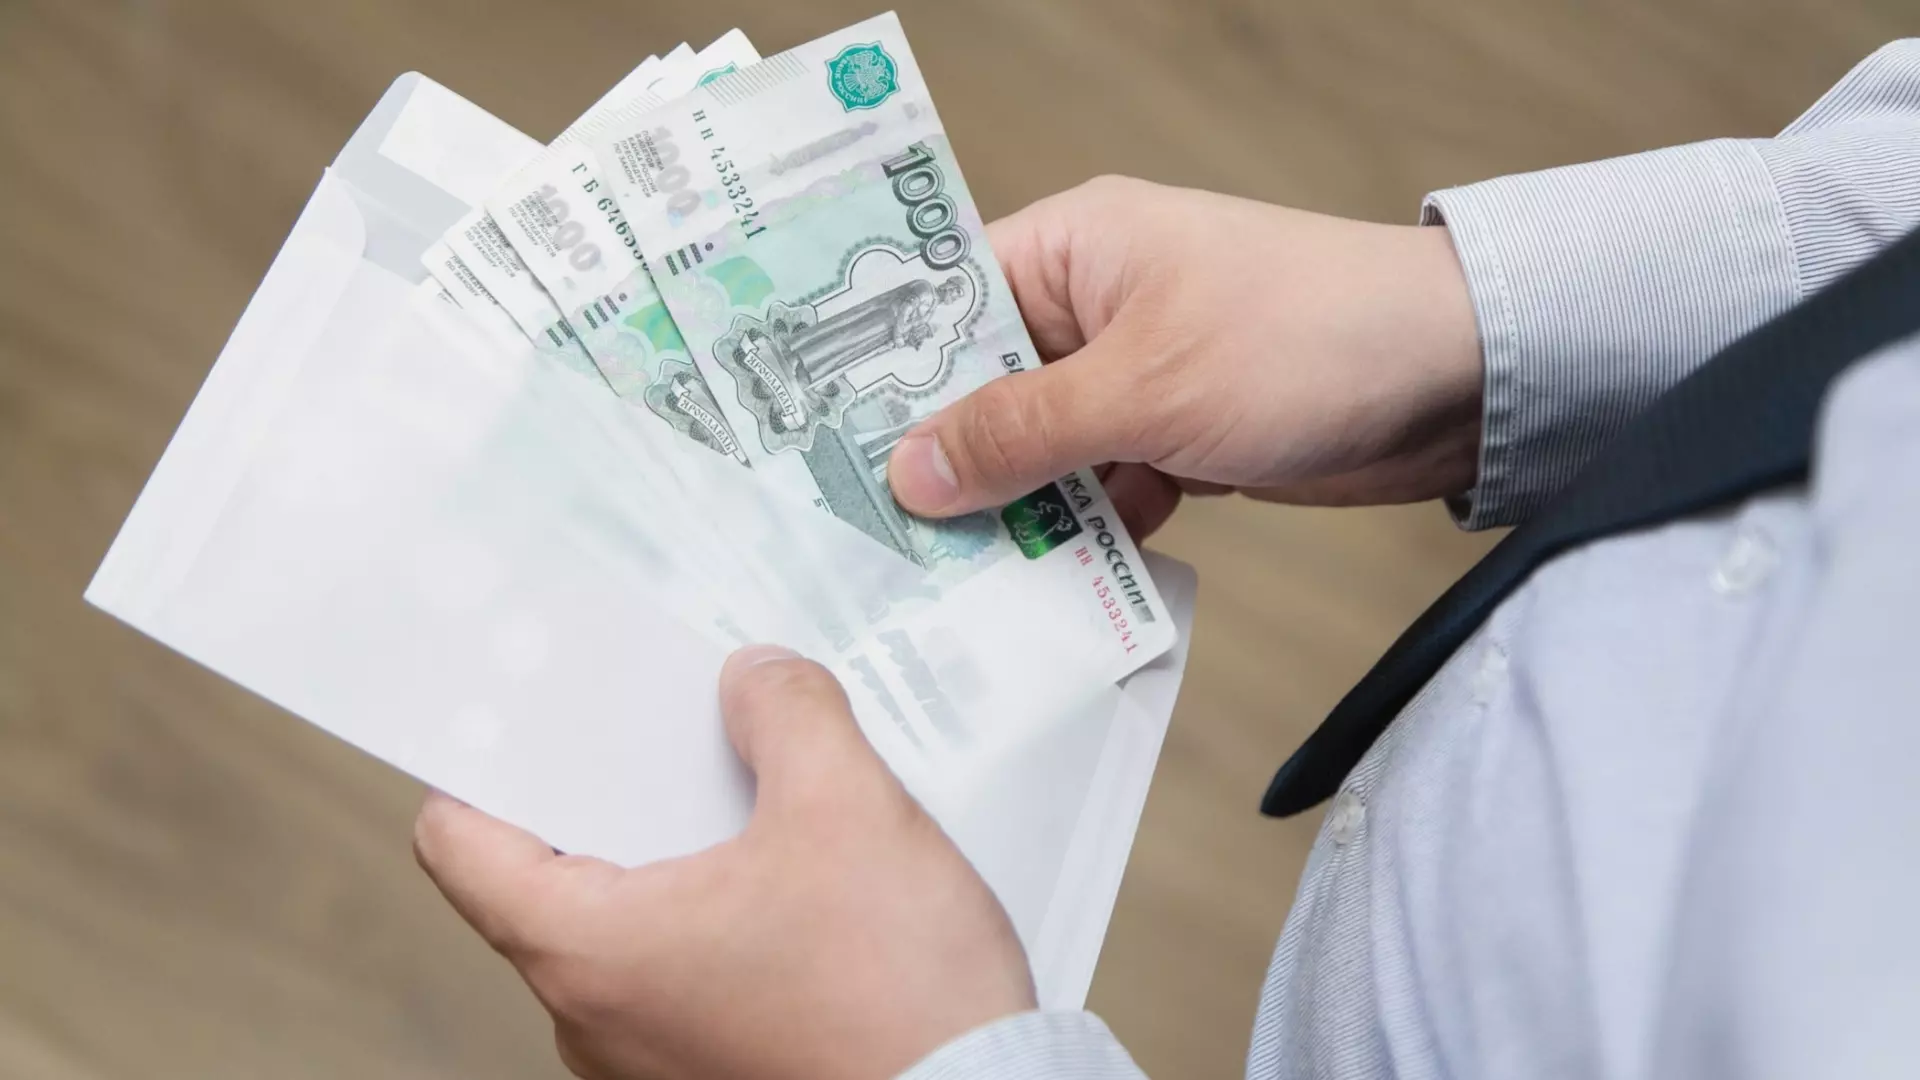 Мужчина просил деньги в долг в аэропорту в Екатеринбурге и не возвращал их